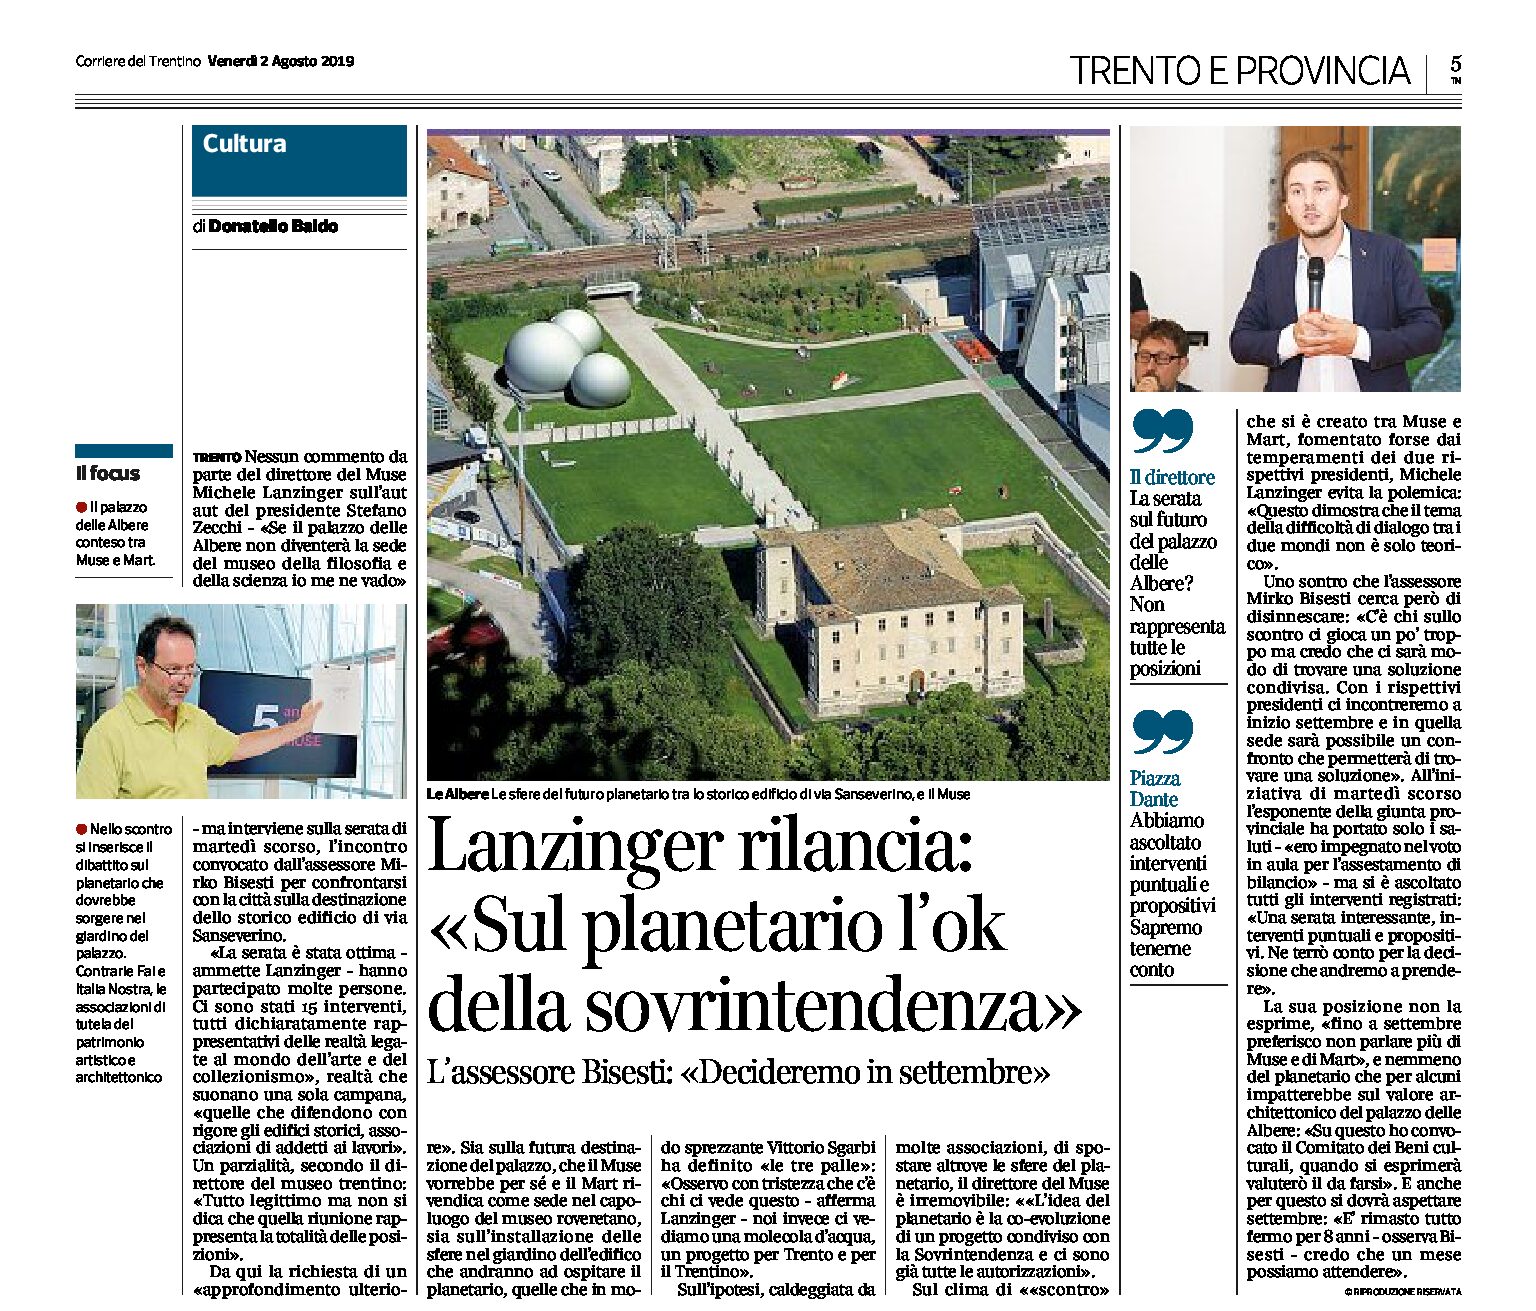 Trento, palazzo delle Albere: dopo il dibattito Lanzinger rilancia “sul planetario l’ok della sovrintendenza”